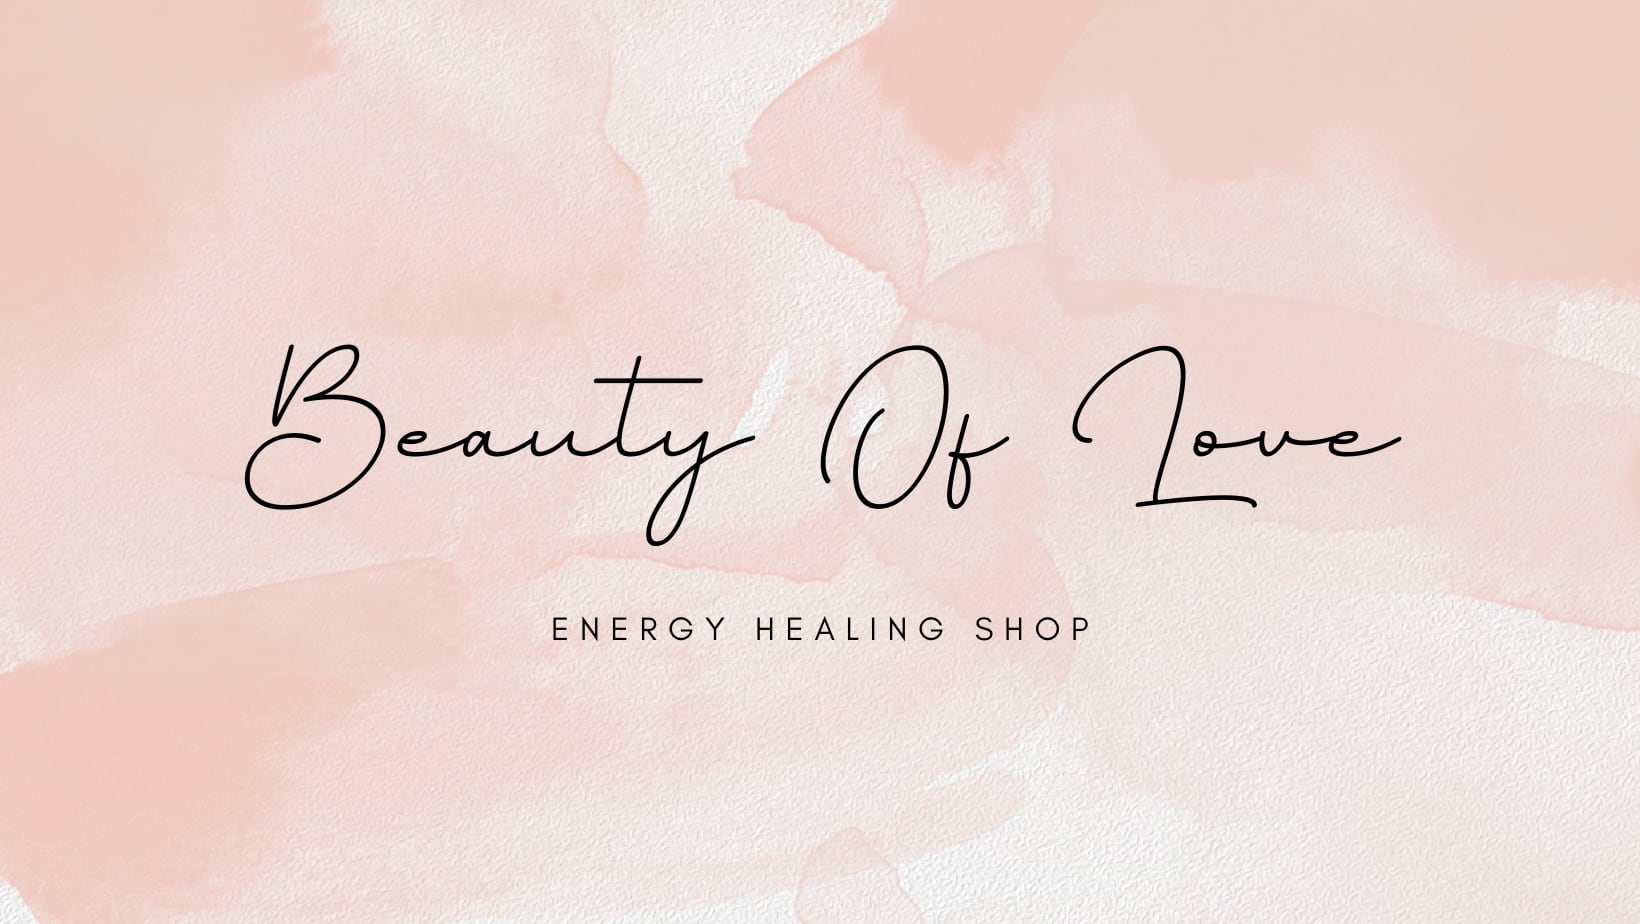 Energy Healing Shop ~Beauty of Love~